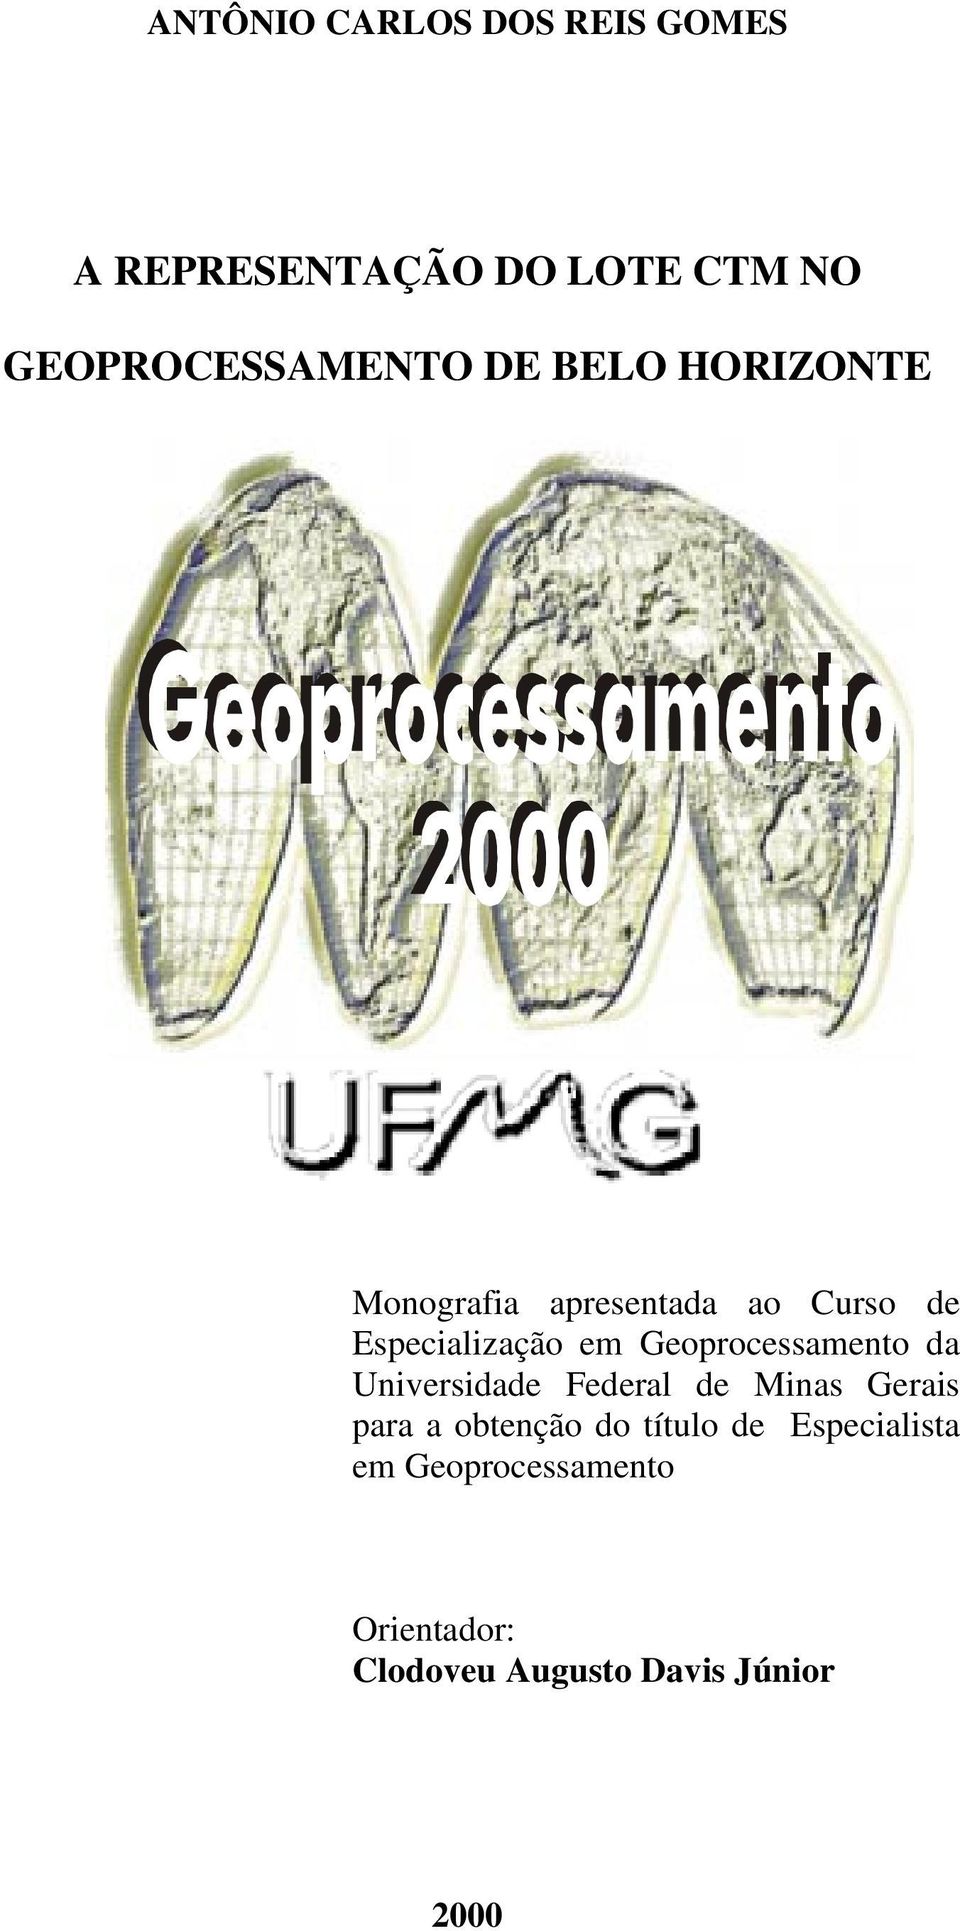 Geoprocessamento da Universidade Federal de Minas Gerais para a obtenção do